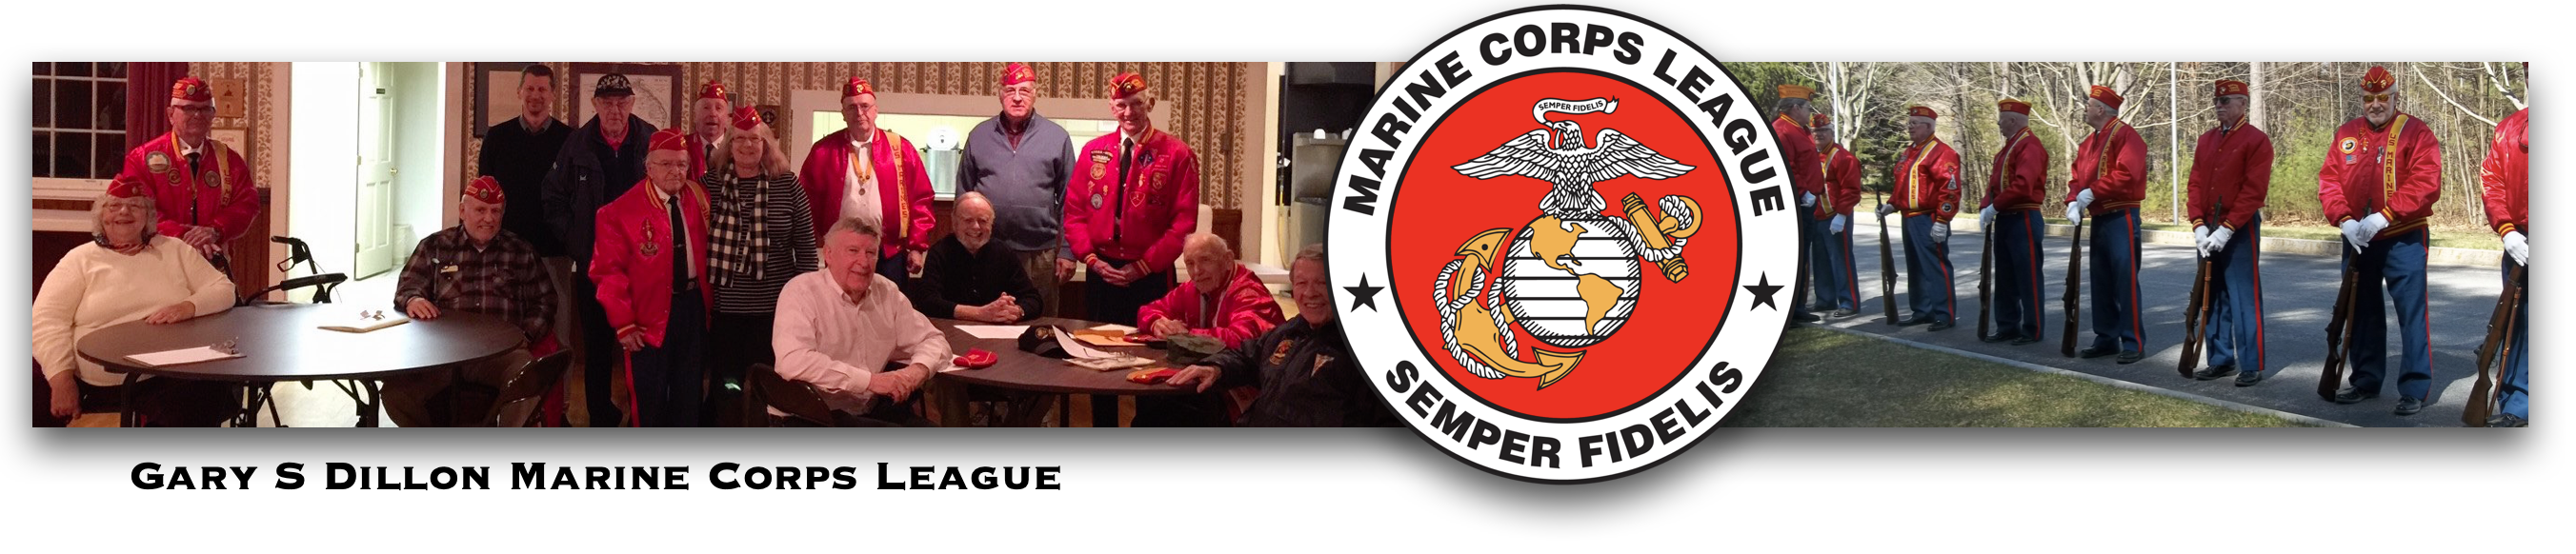 Gary S Dillon Marine Corps League